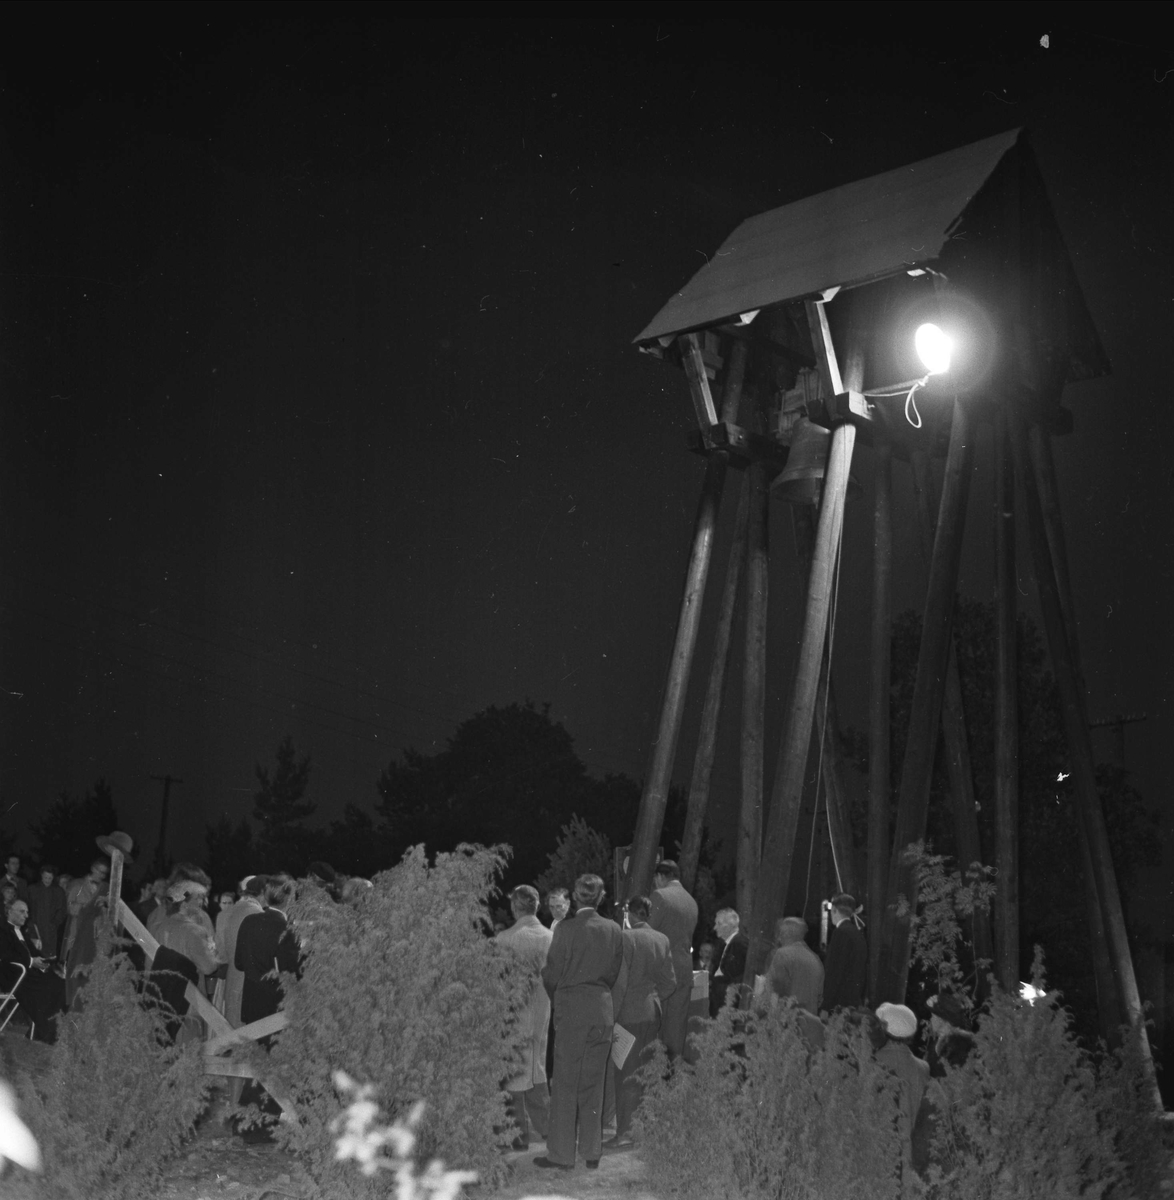 Invigning av Märsta klockstapel, Uppland, september 1955